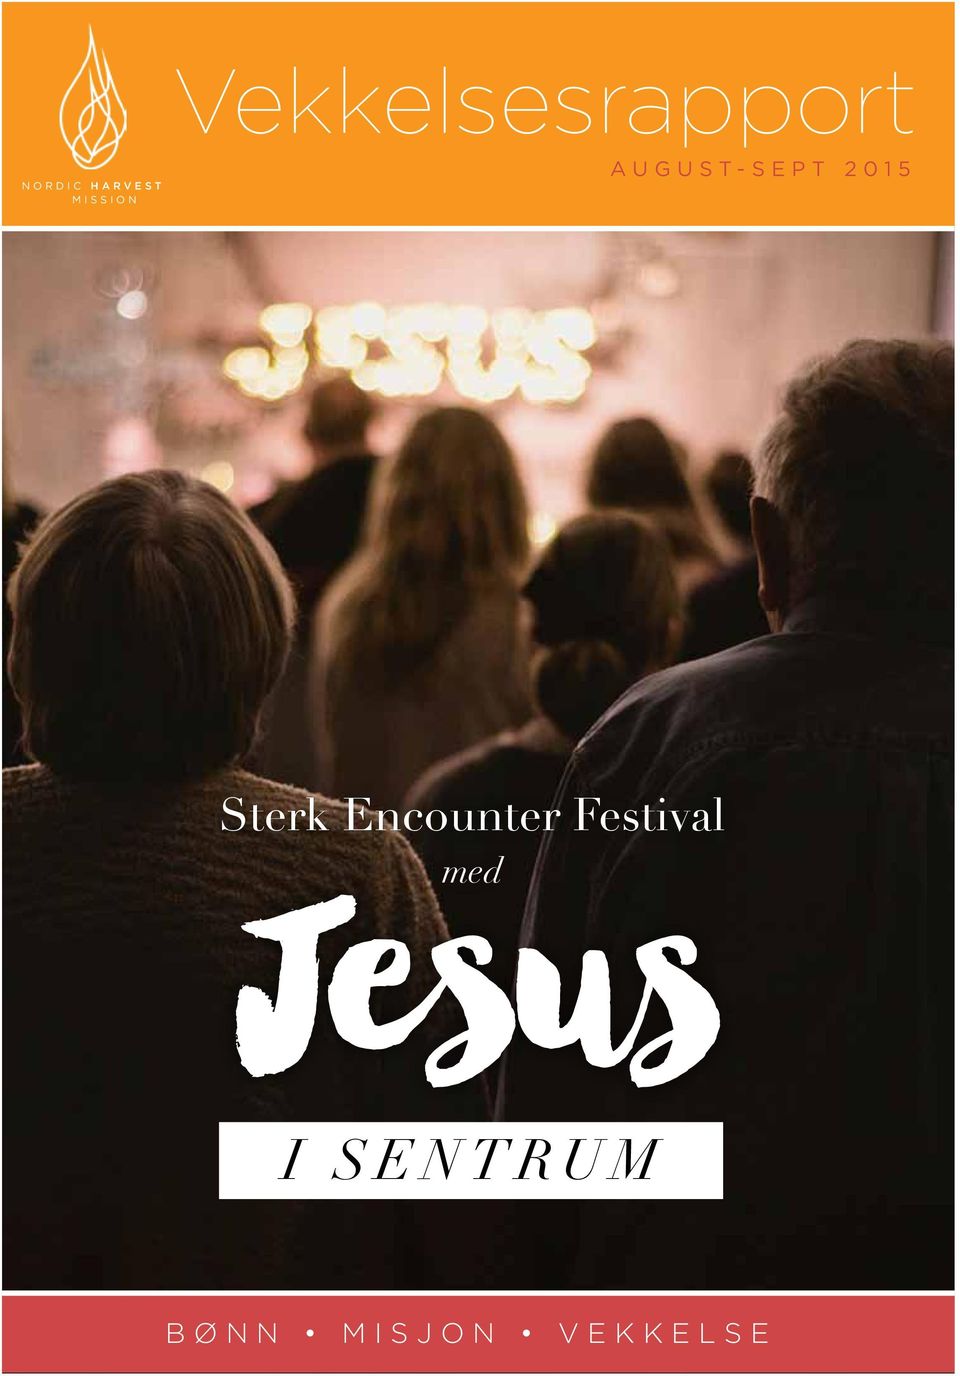 Sterk Encounter Festival med Jesus i s e n